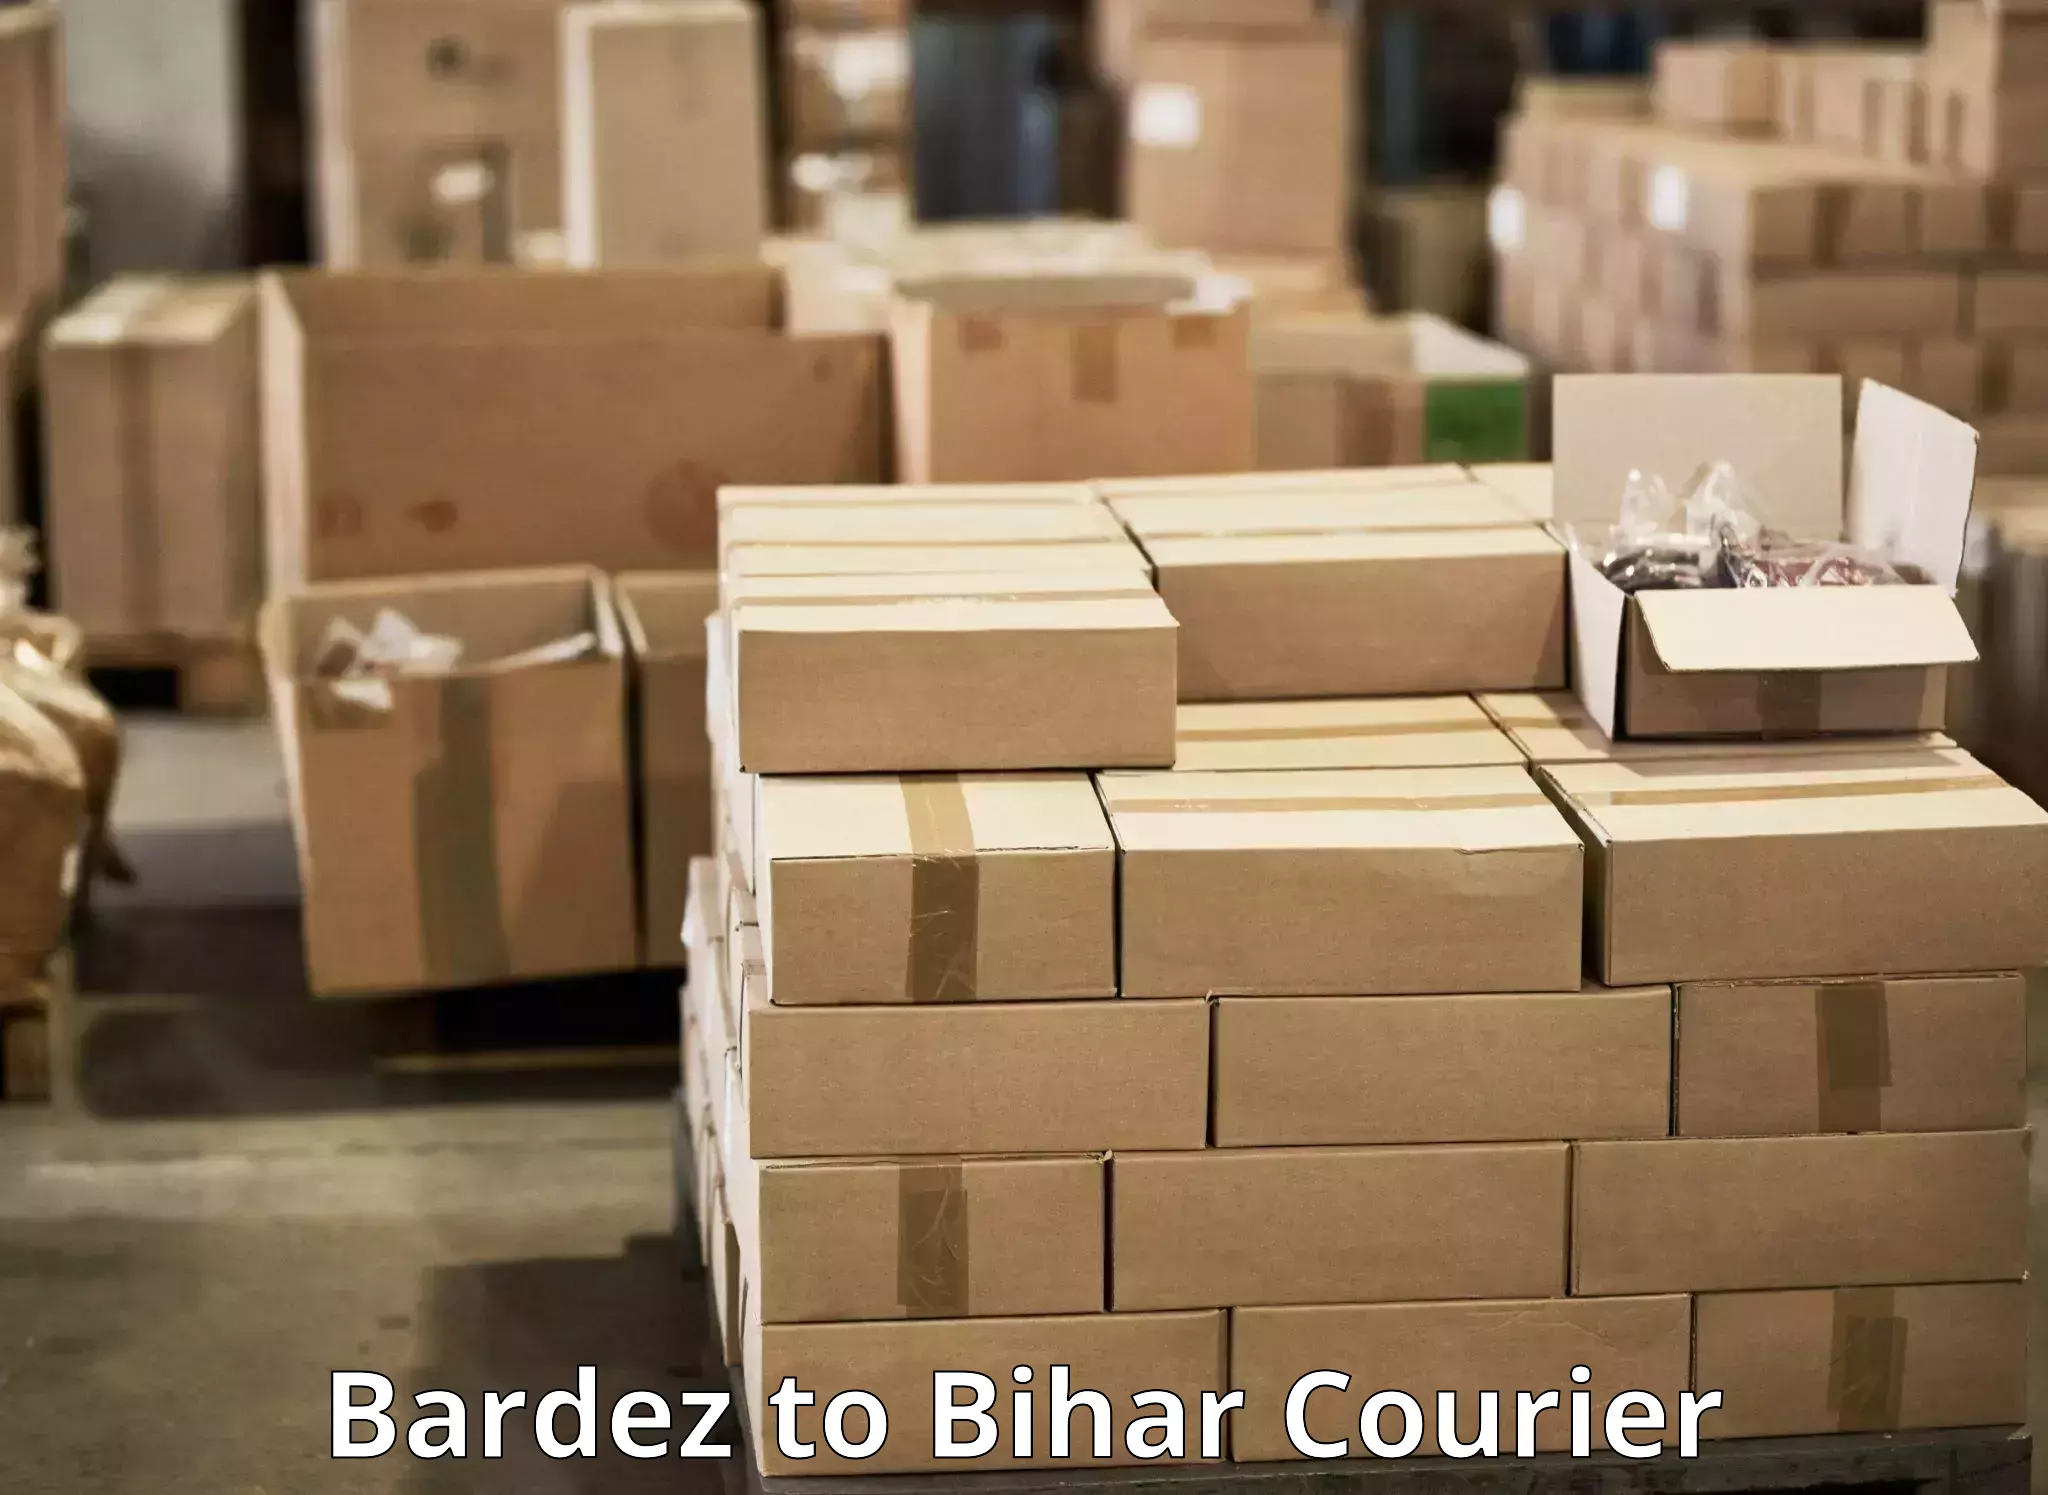 Courier service efficiency Bardez to Khizarsarai